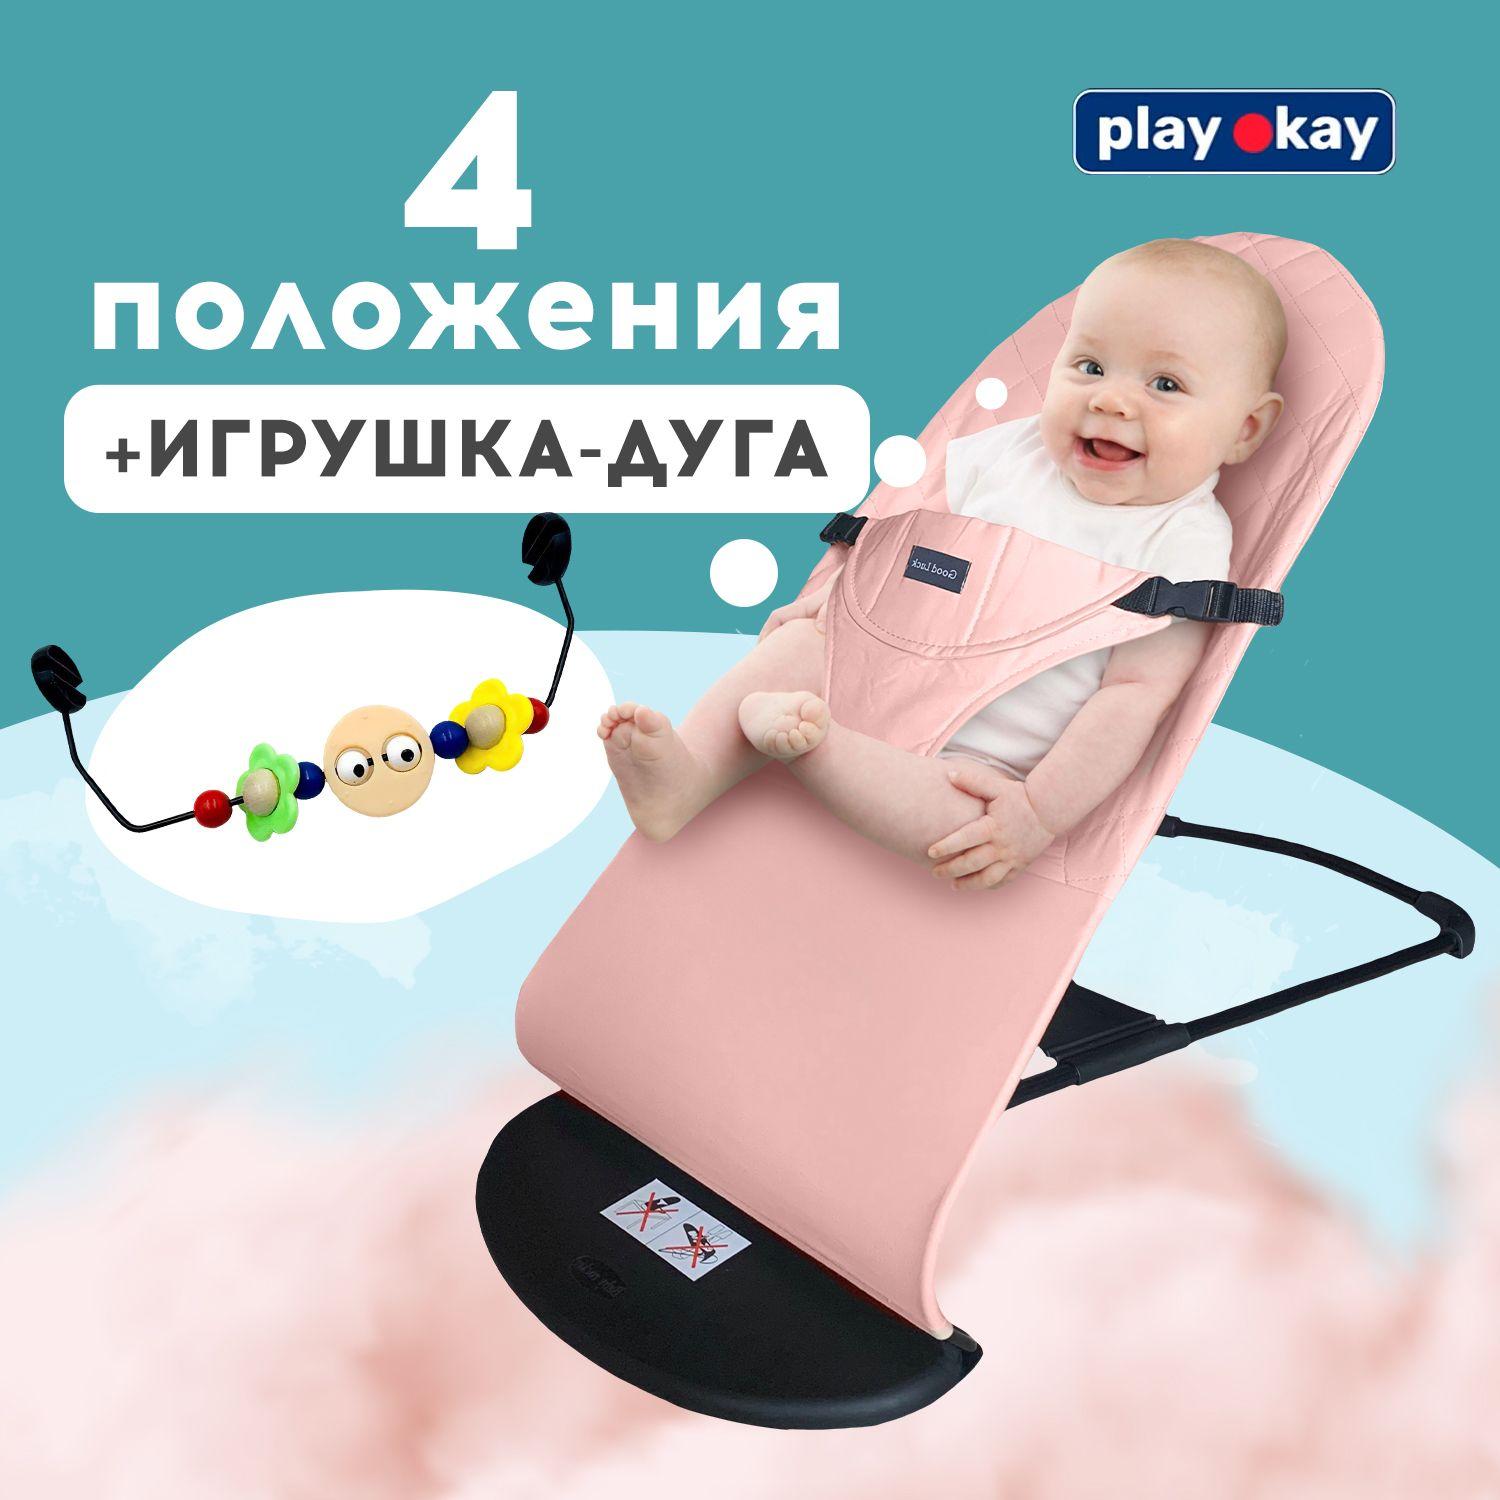 play okay | Шезлонг для новорожденных, детское кресло качалка Play Okay с развивающей игрушкой дугой малышу до 15 кг, Материал: тарилен, метал, полипропилен / 78 х 40 х 56 см, Розовый